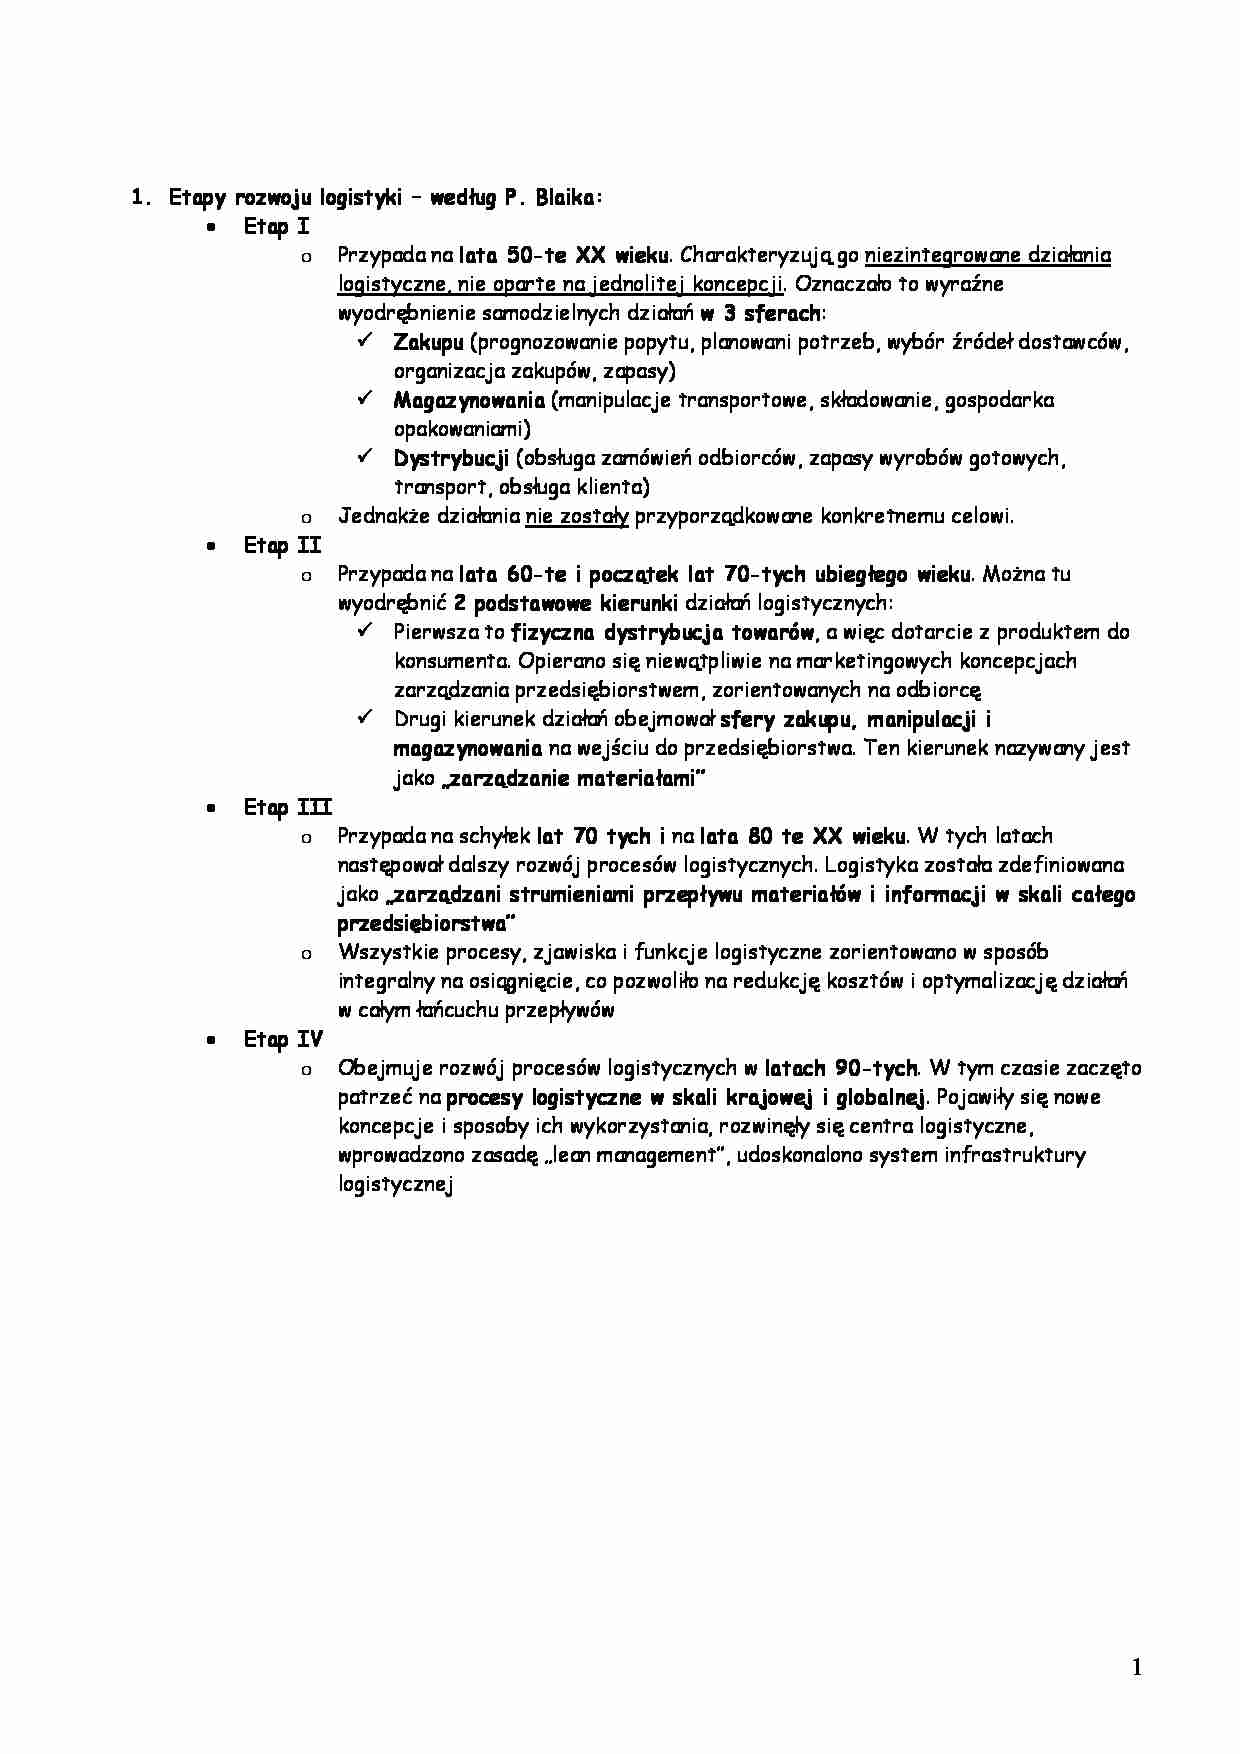 Etapy rozwoju logistyki według Blaika - strona 1